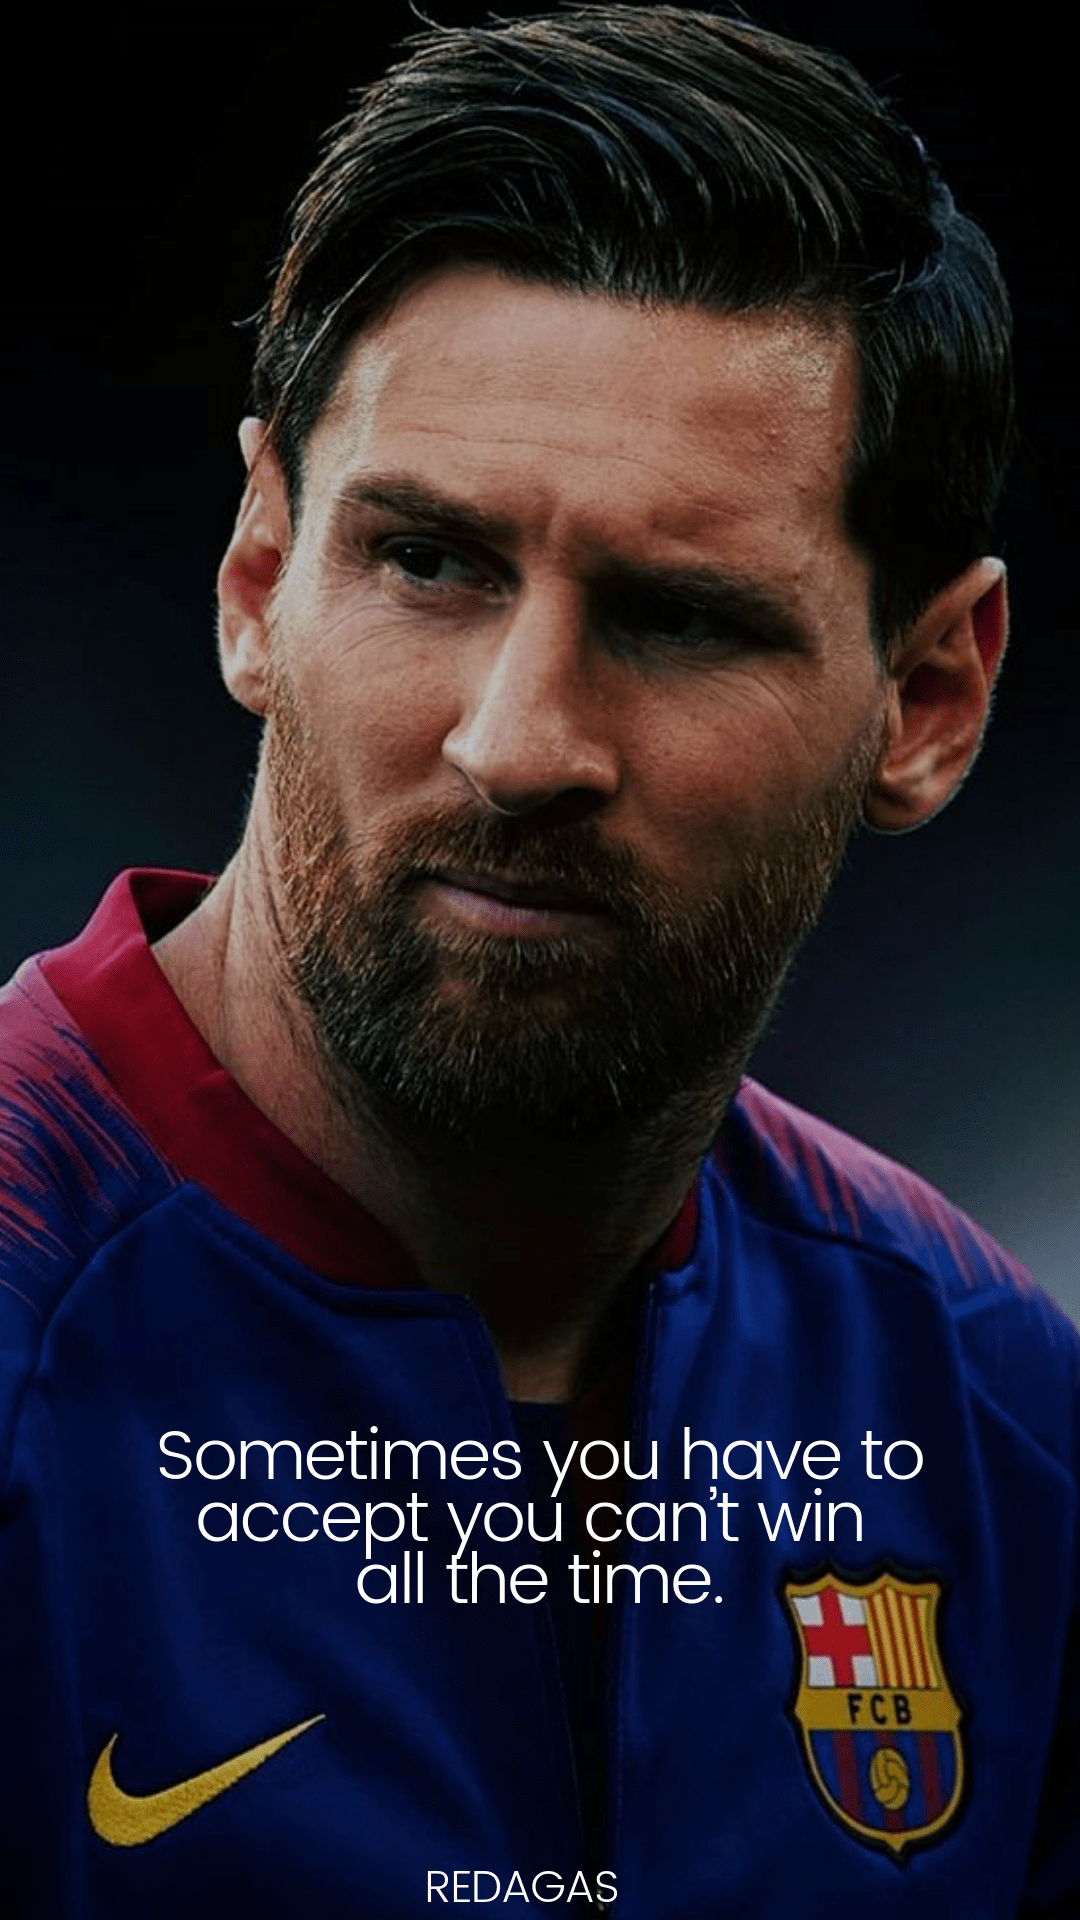 Hình nền trích dẫn của Messi sẽ truyền cảm hứng cho bạn. Hãy xem để nhận được lời khuyên tuyệt vời từ một trong những ngôi sao bóng đá lớn nhất trong lịch sử.